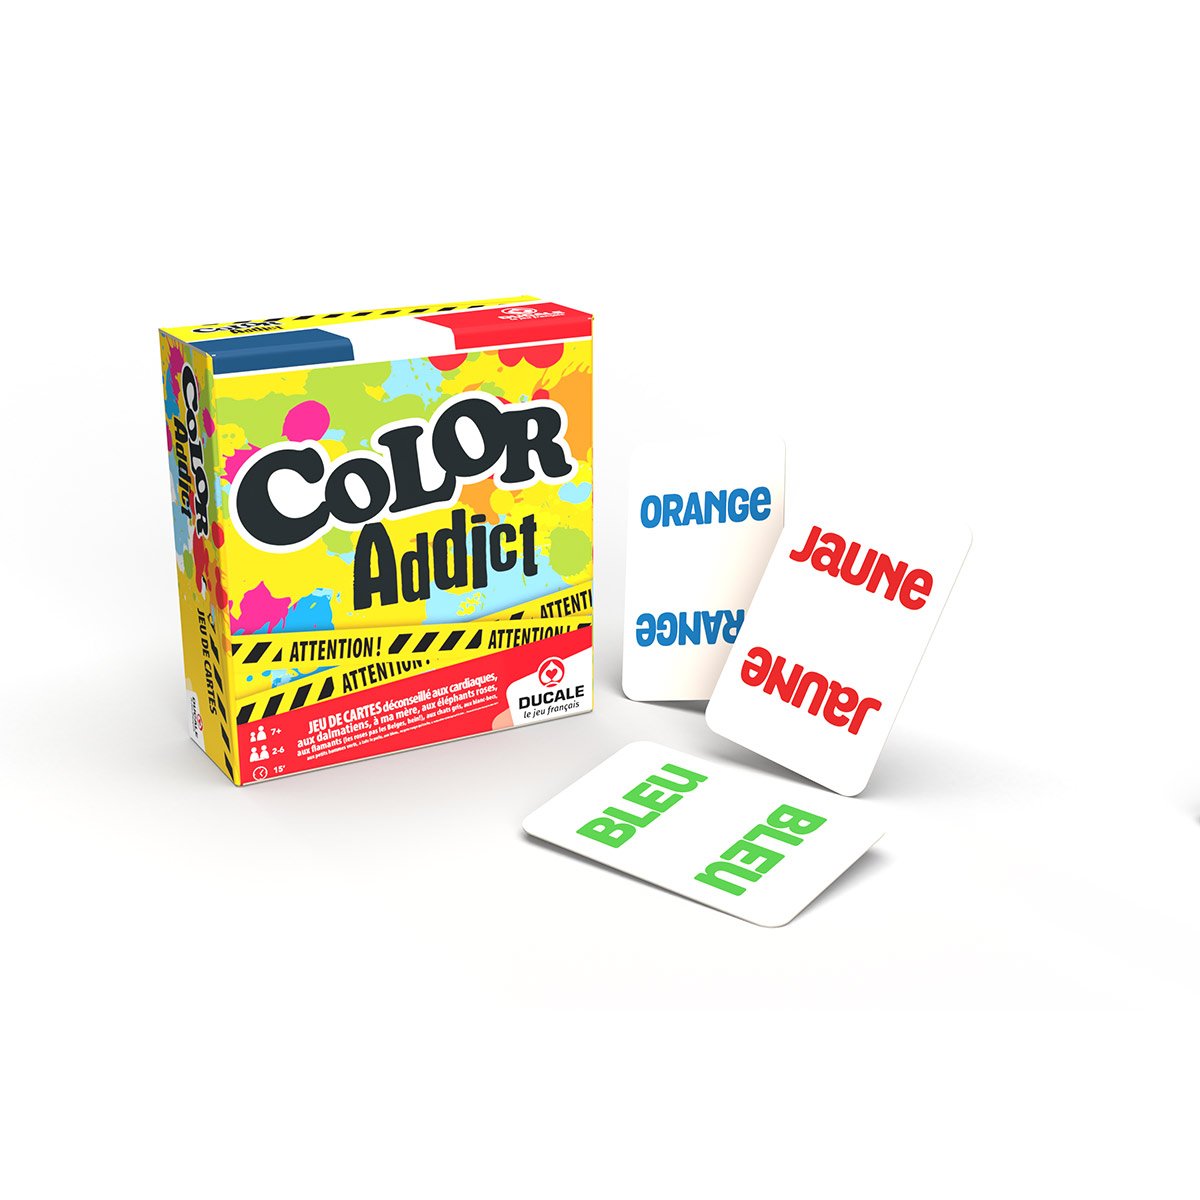 Color Addict Puzzle : Color Addict revient dans une version Puzzle.